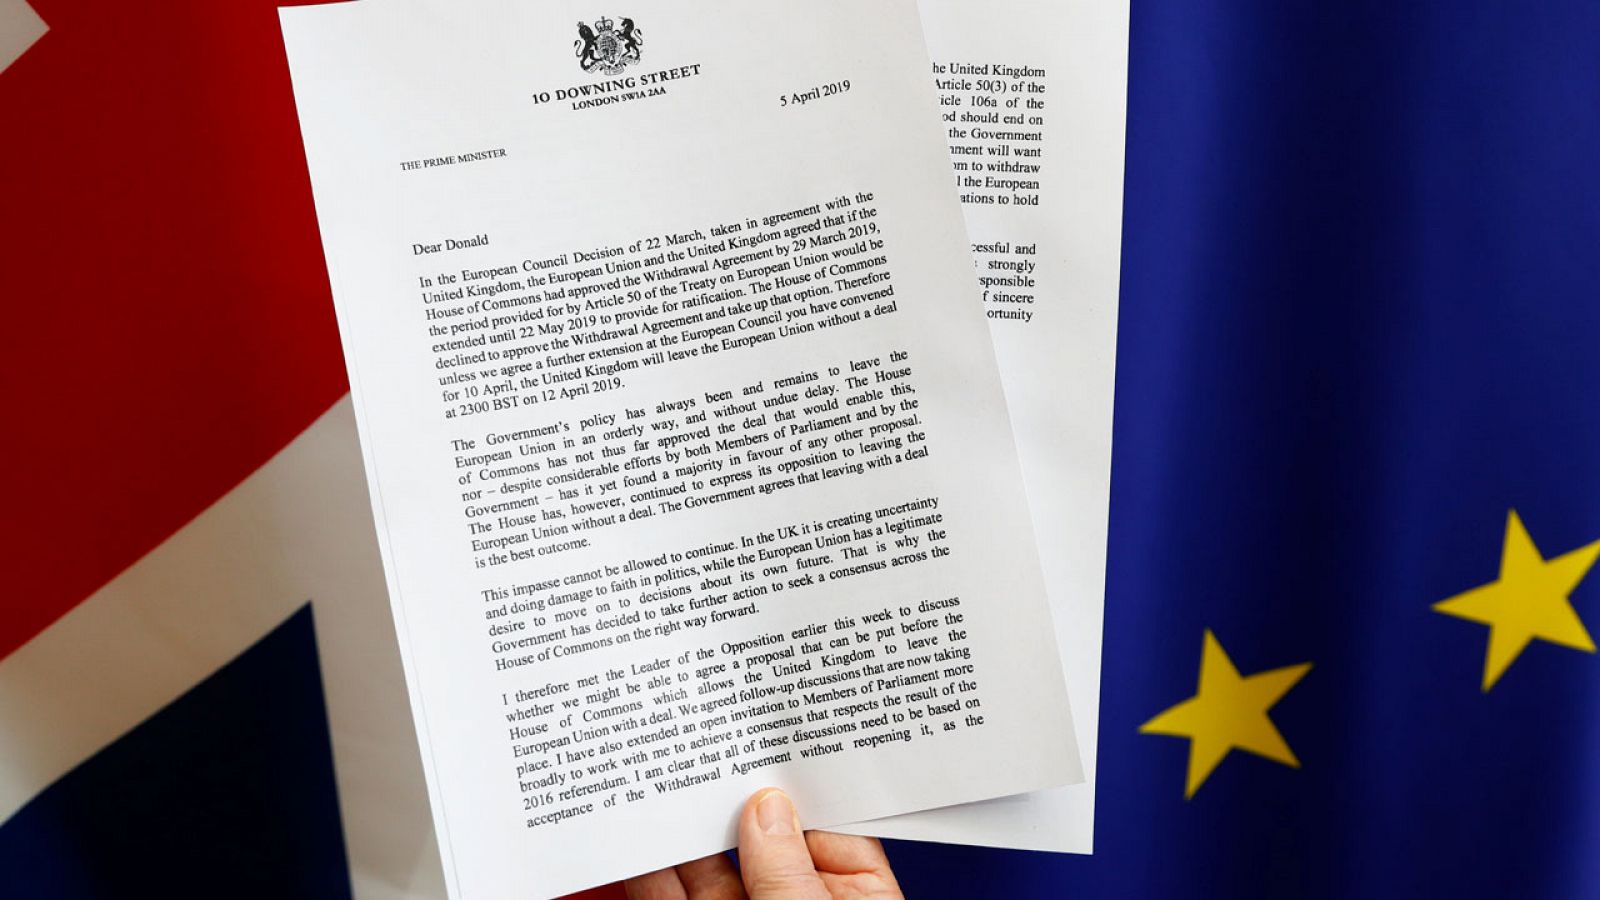 Una copia de la carta en la que Theresa May solicita una prórroga del 'Brexit'